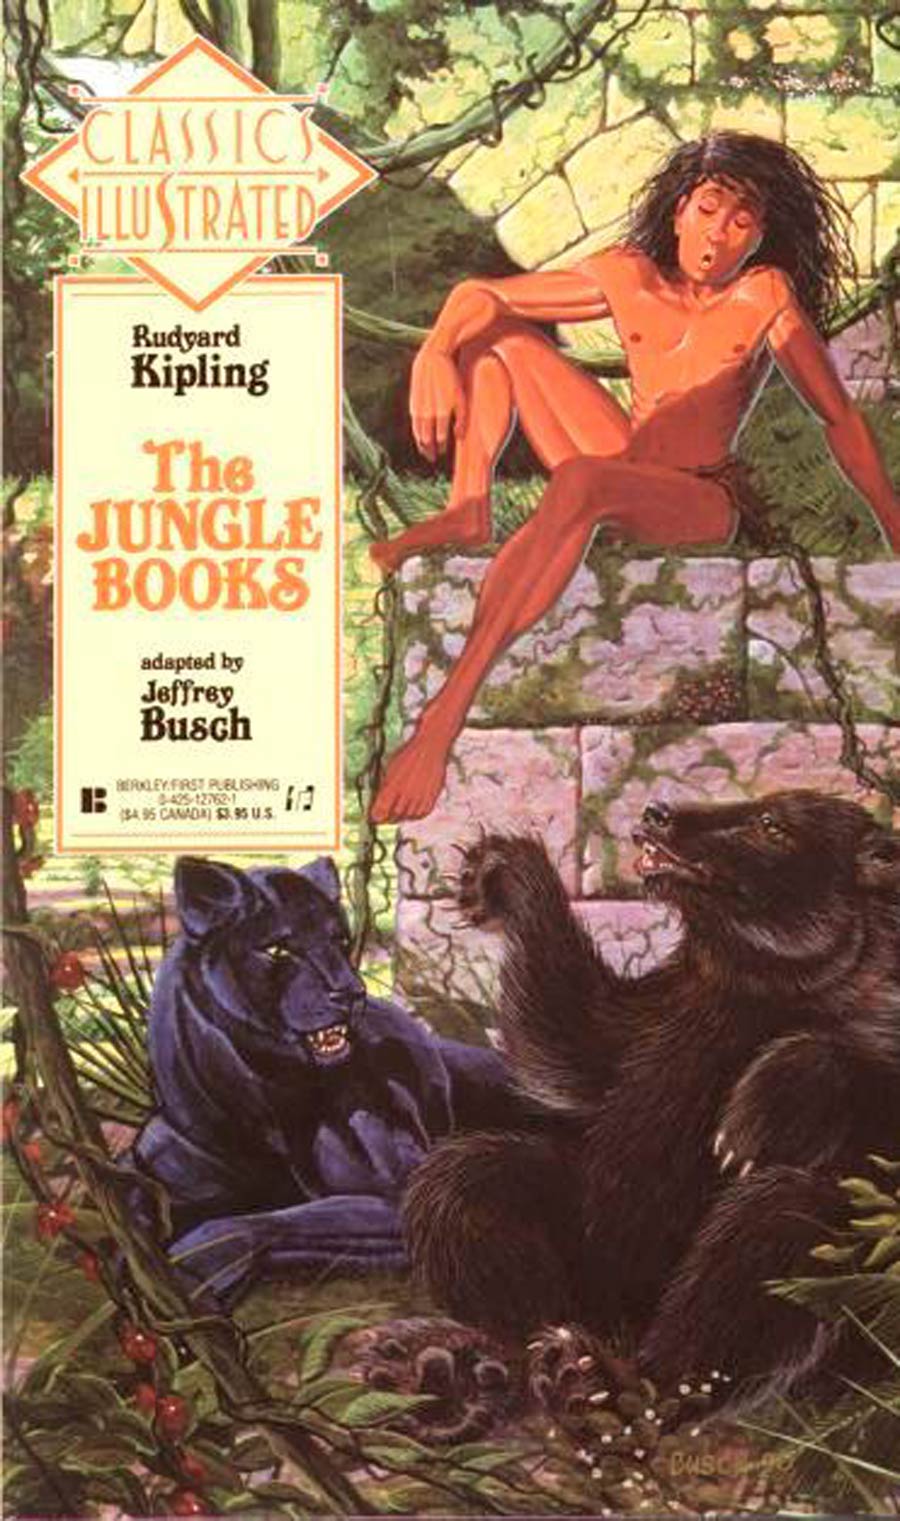 Classics Illustrated Vol 2 #22 The Jungle Books